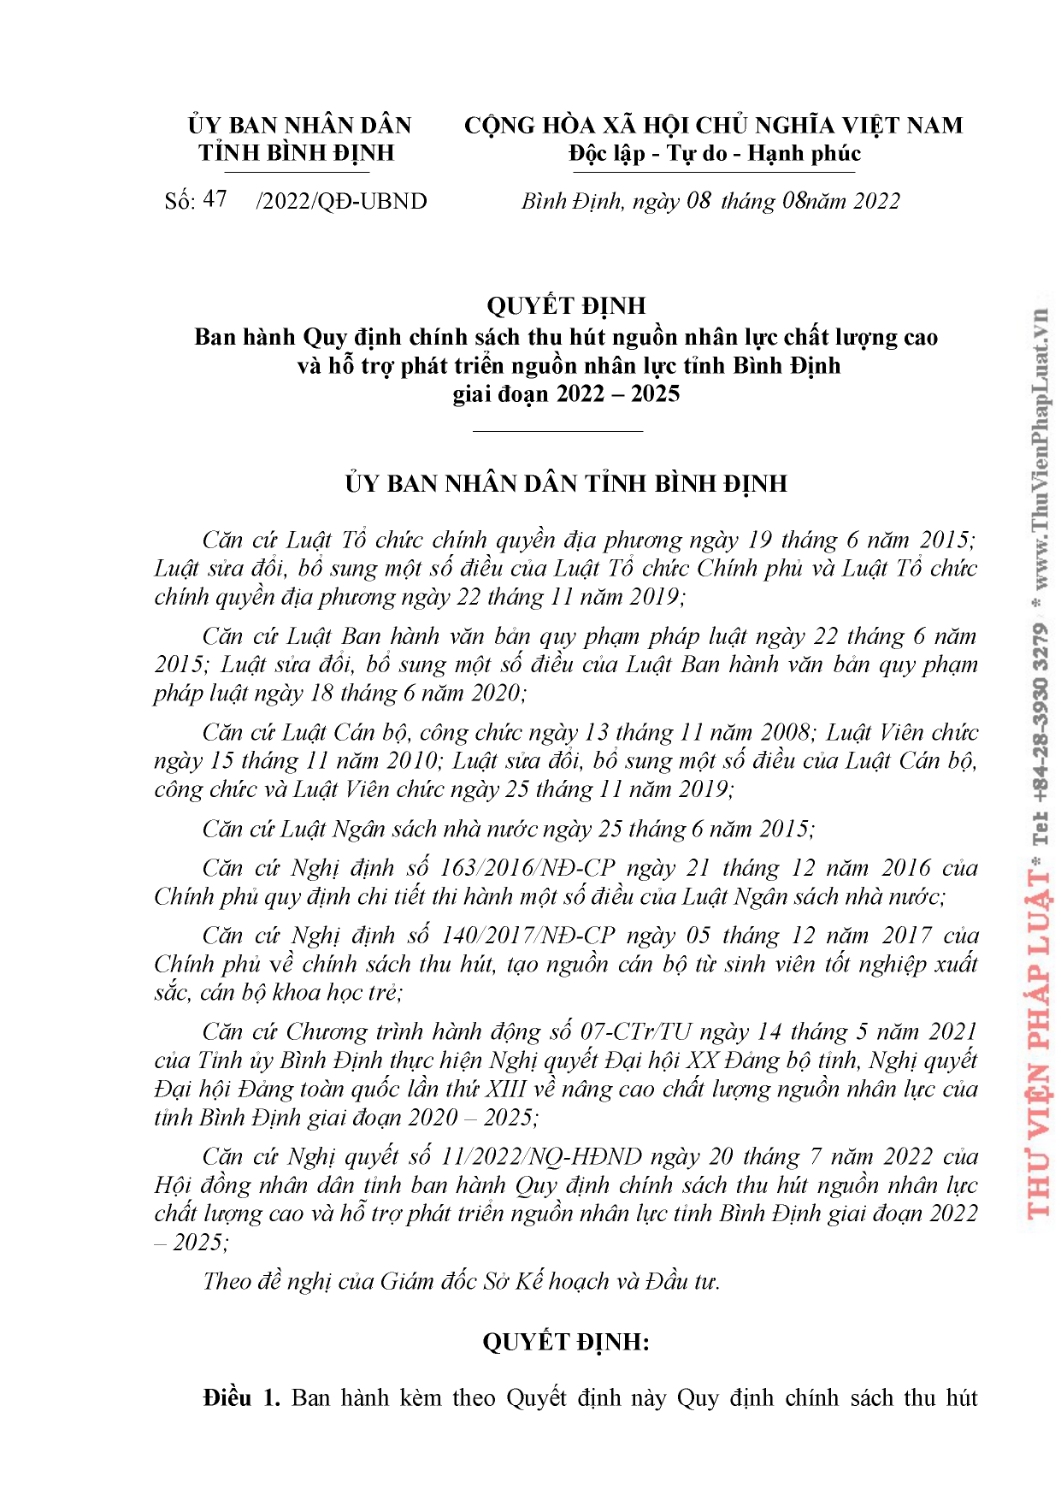 QD 47 quy dinh chinh sach thu hut cua UBND tinh (1) page 0001